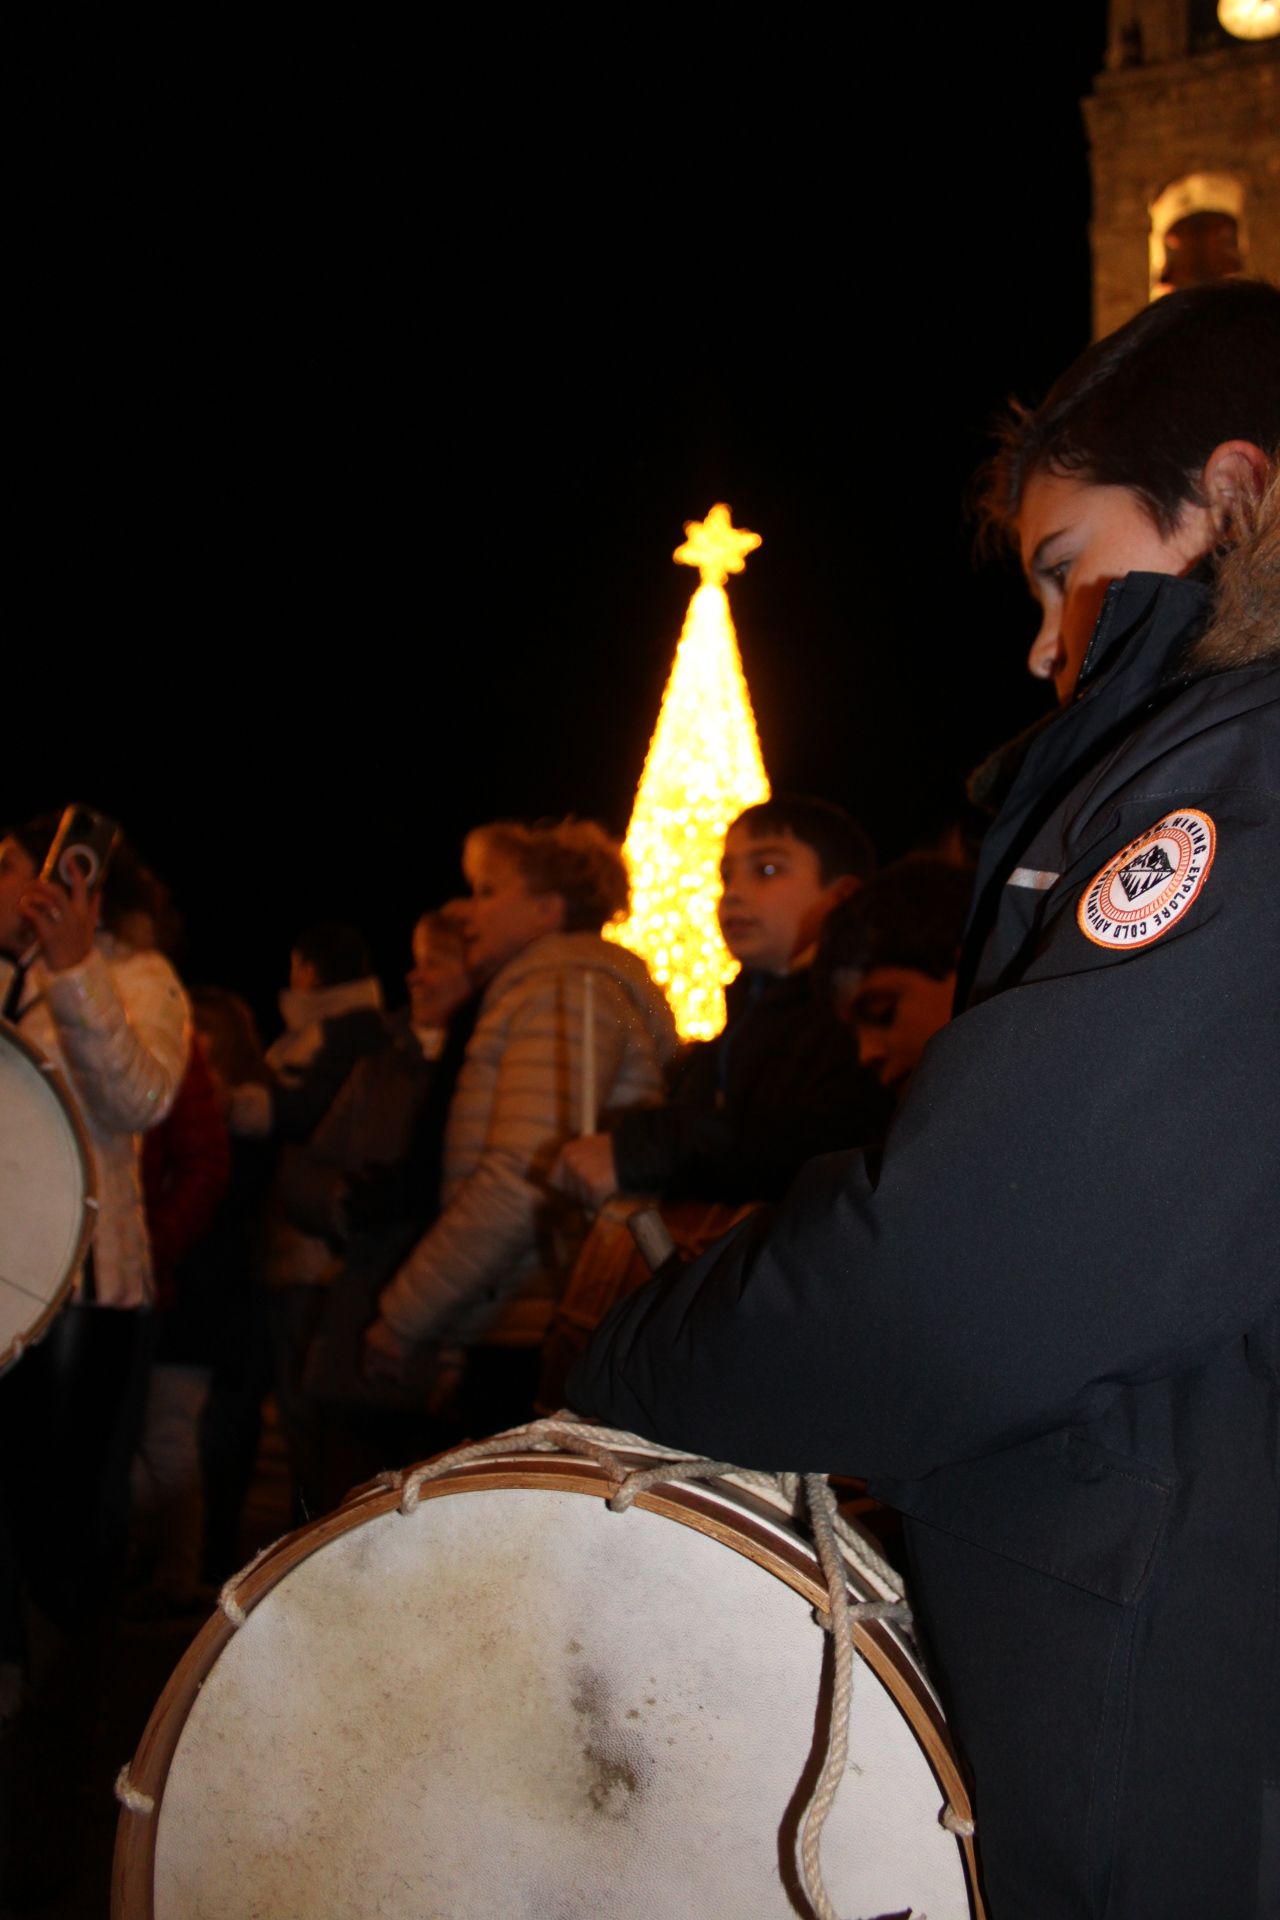 Encendido de las luces navideñas en Puebla de Sanabria